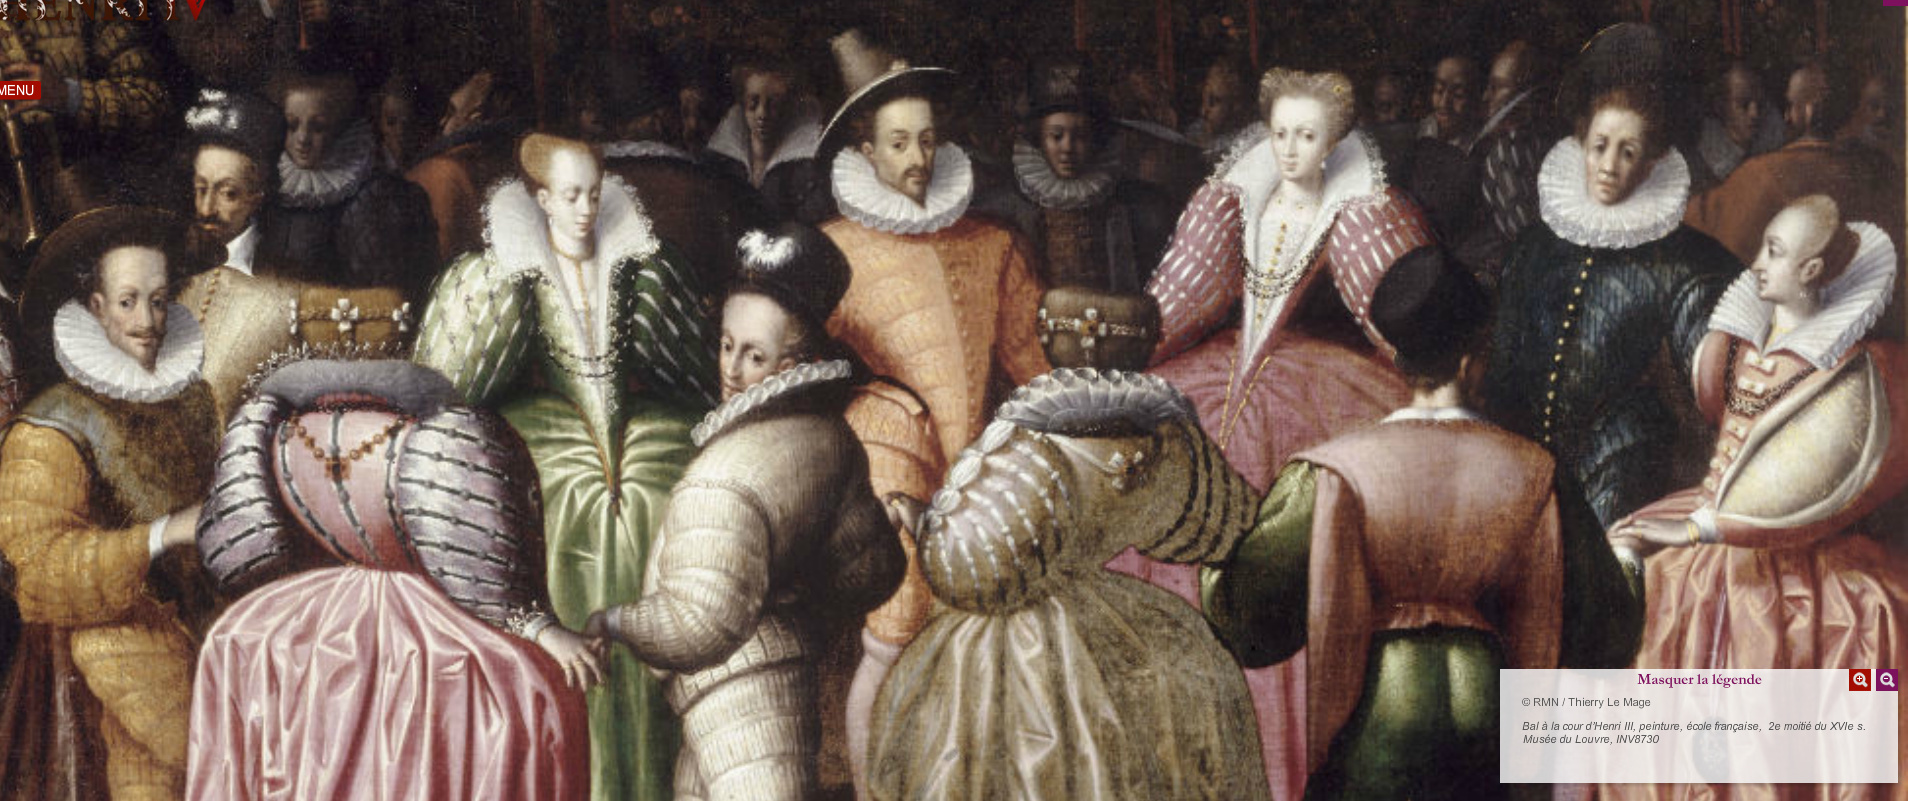 1582 (after) - Bal à la cour d'Henri III - French school